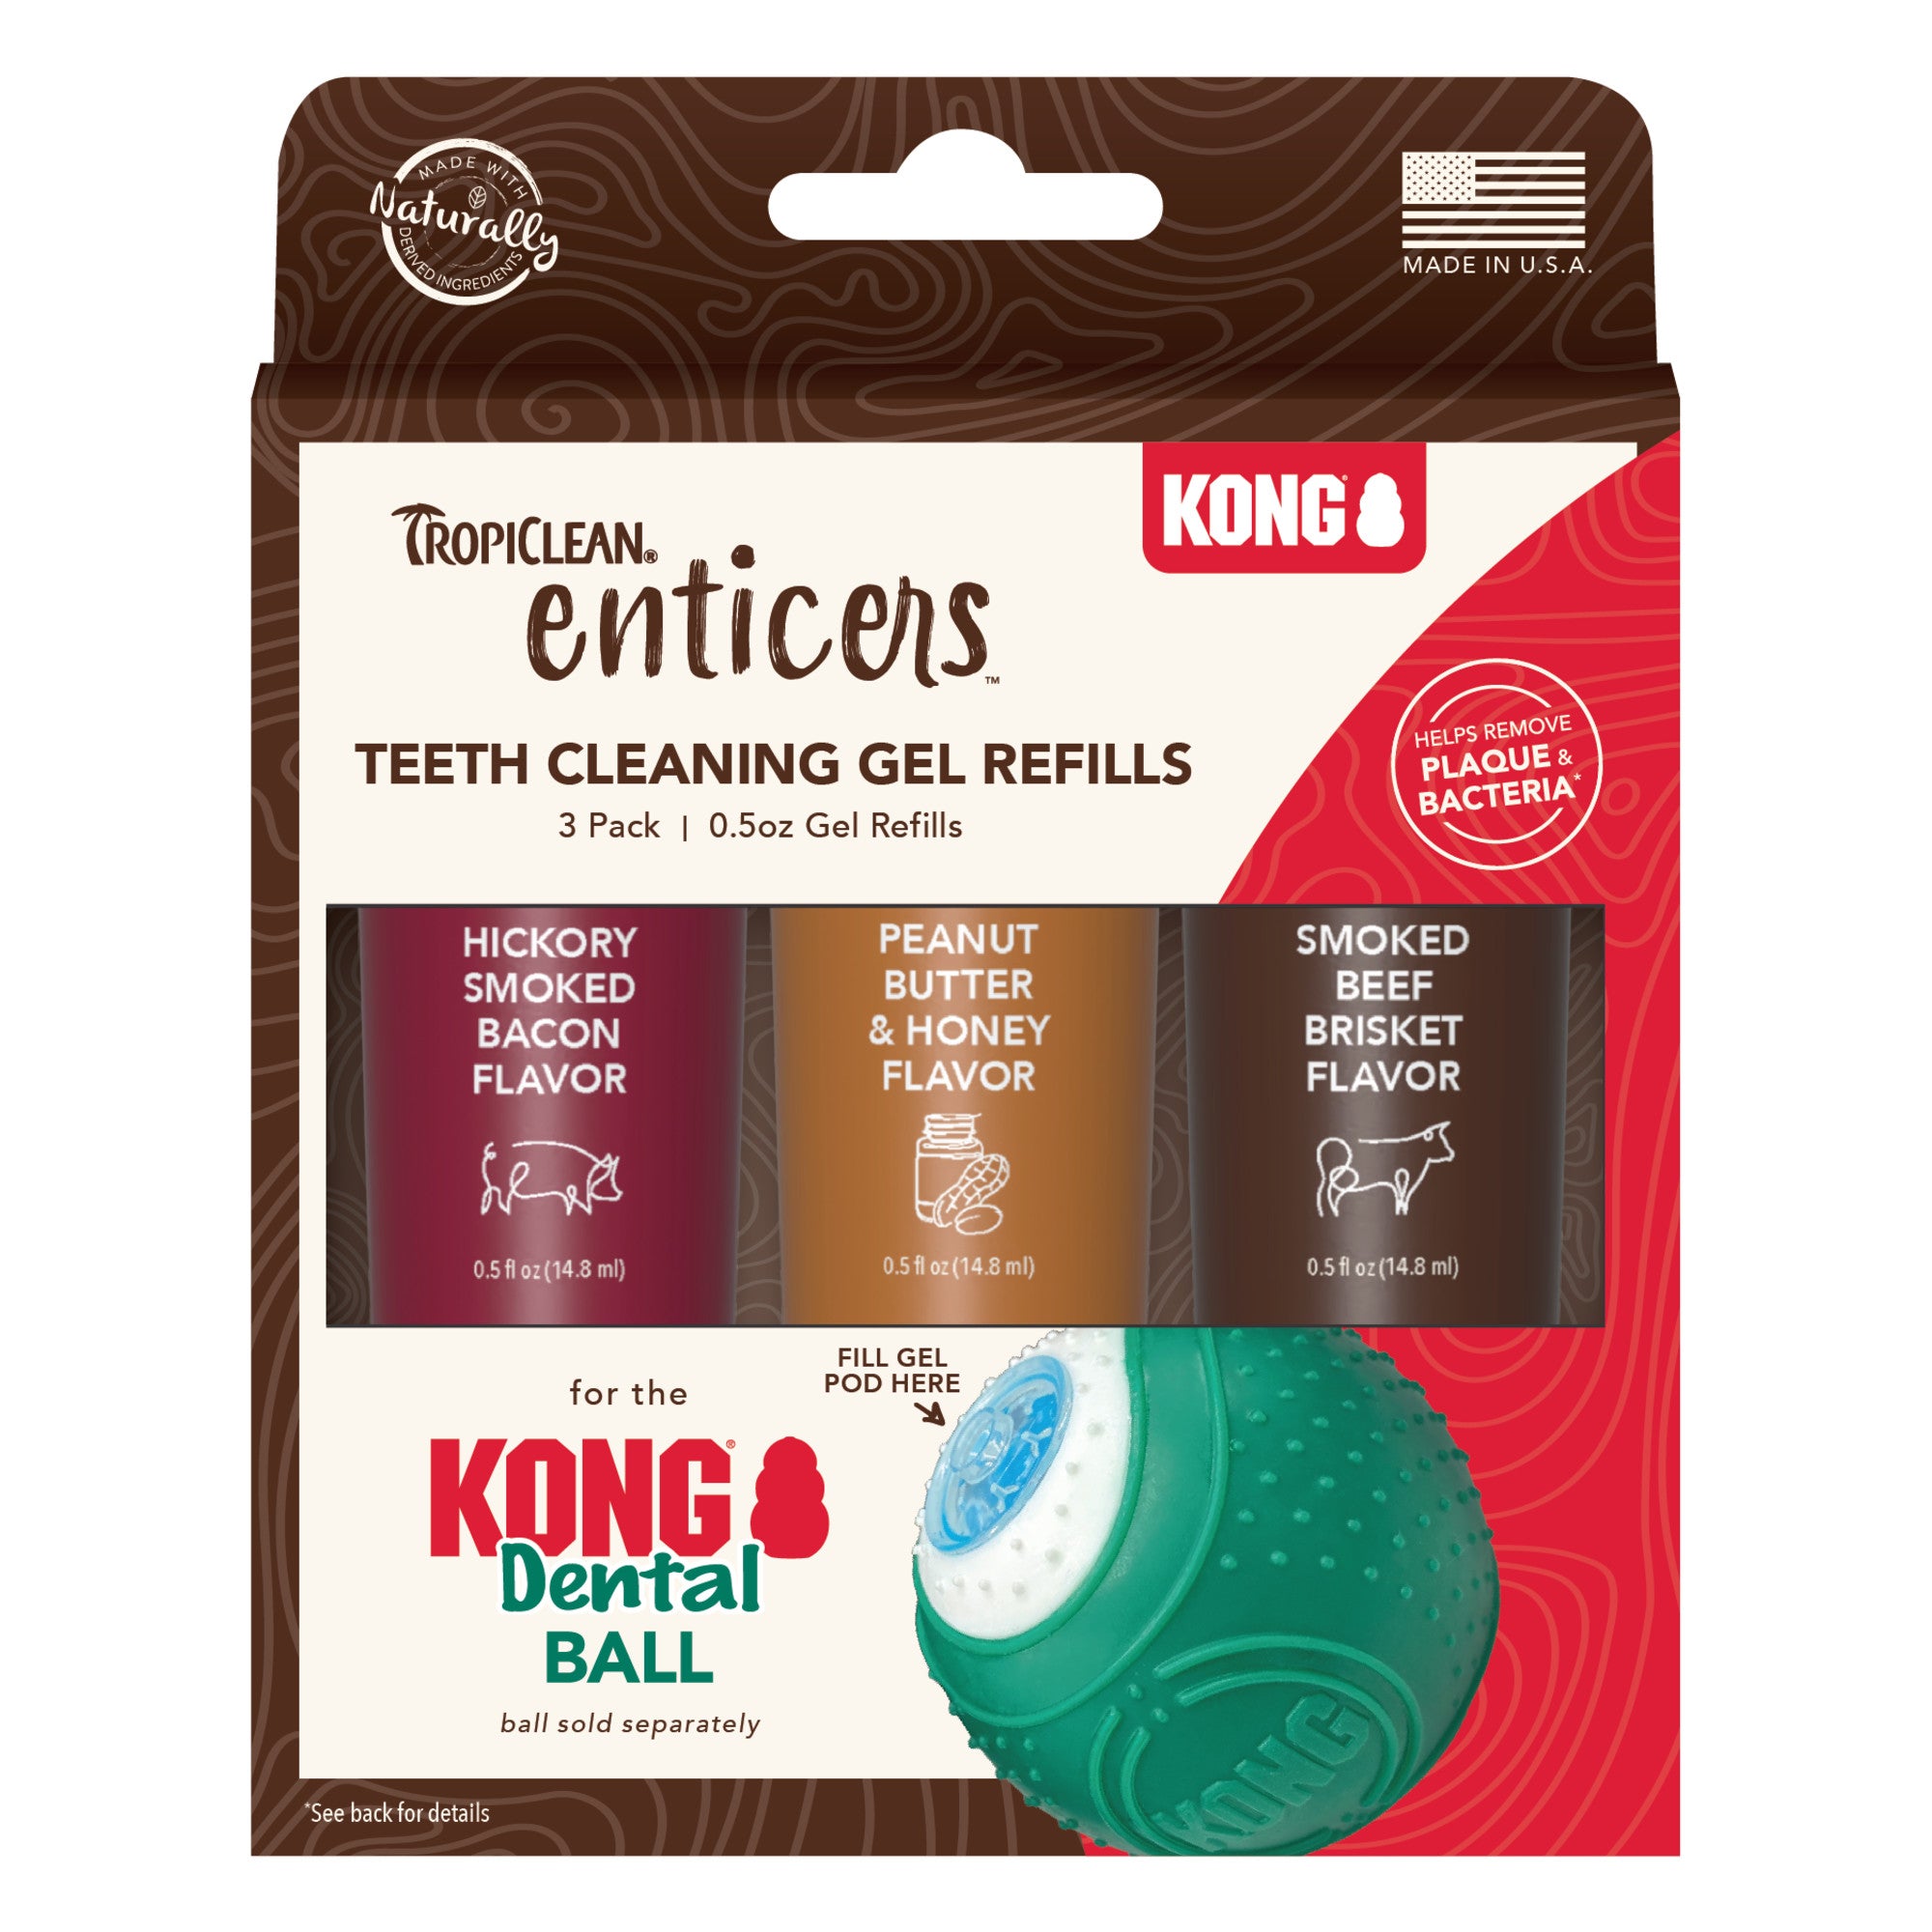 Tropiclean Enticers KONG Dental Ball Teeth Cleaning Gel Refills 3pk - RSPCA VIC